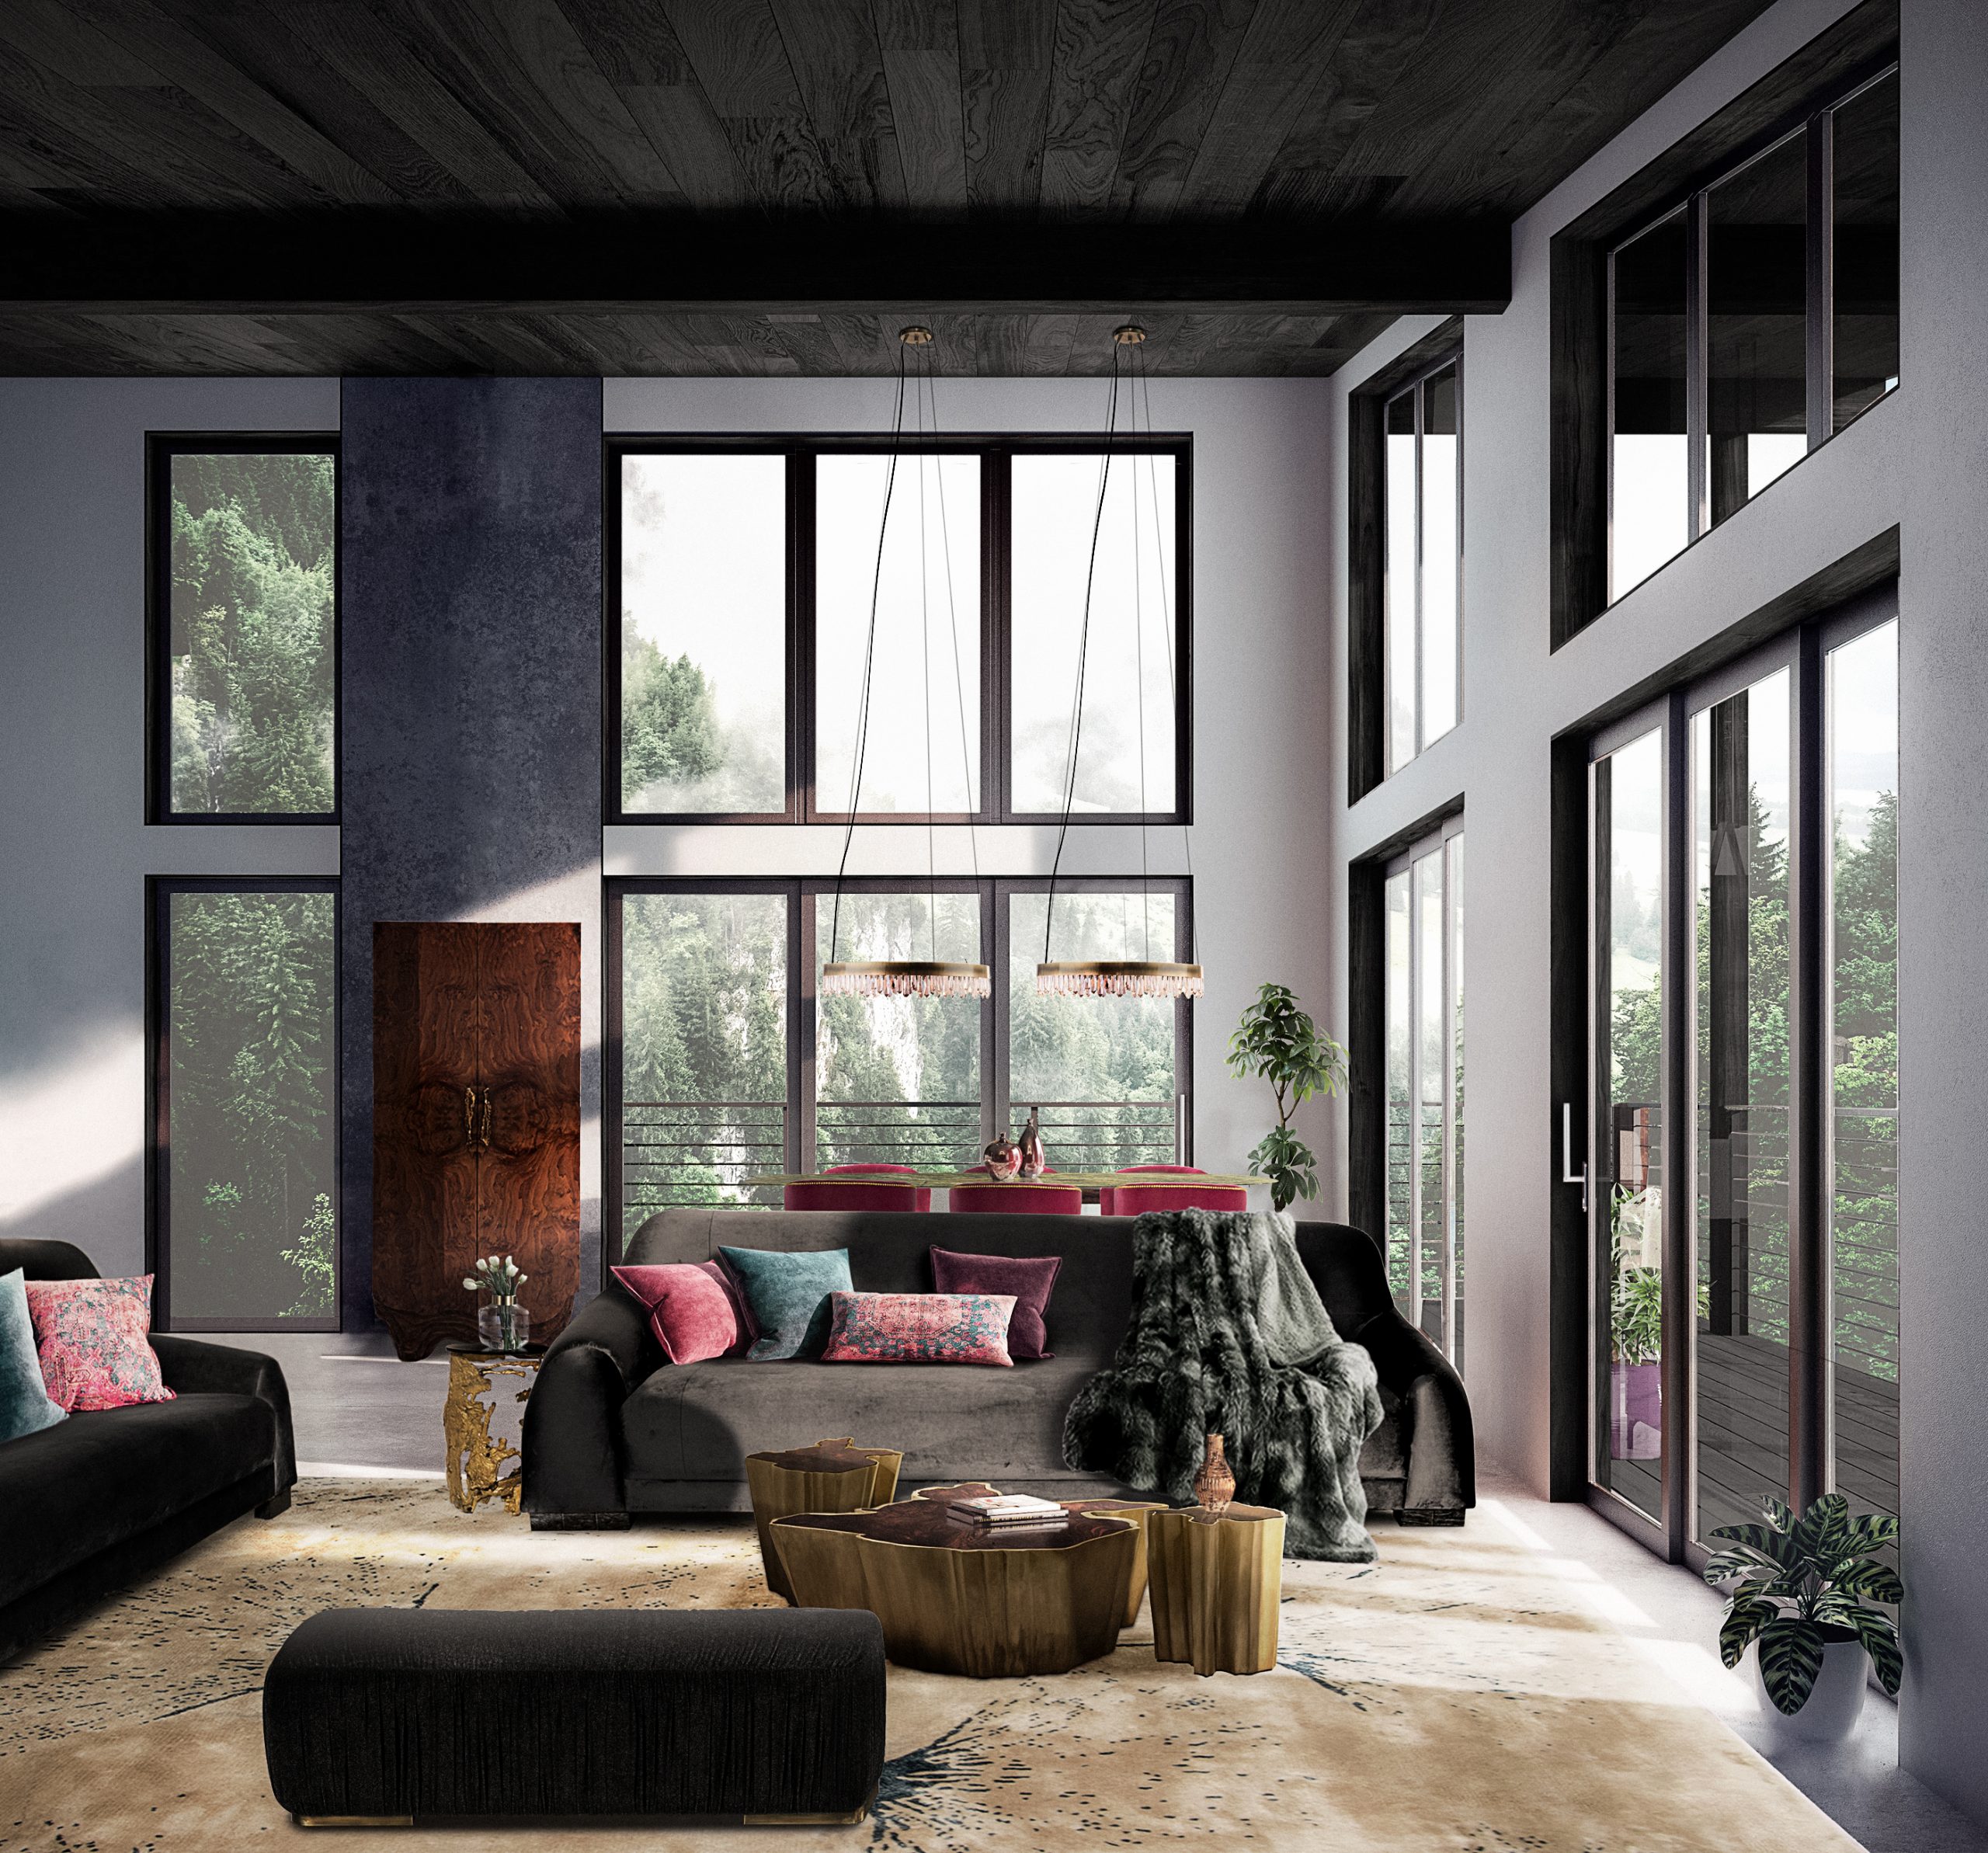 Contemporary living room with Borneo Sofa - Contemporary Living Room Decor Create Unique Interior Designs   home inspiration ideas